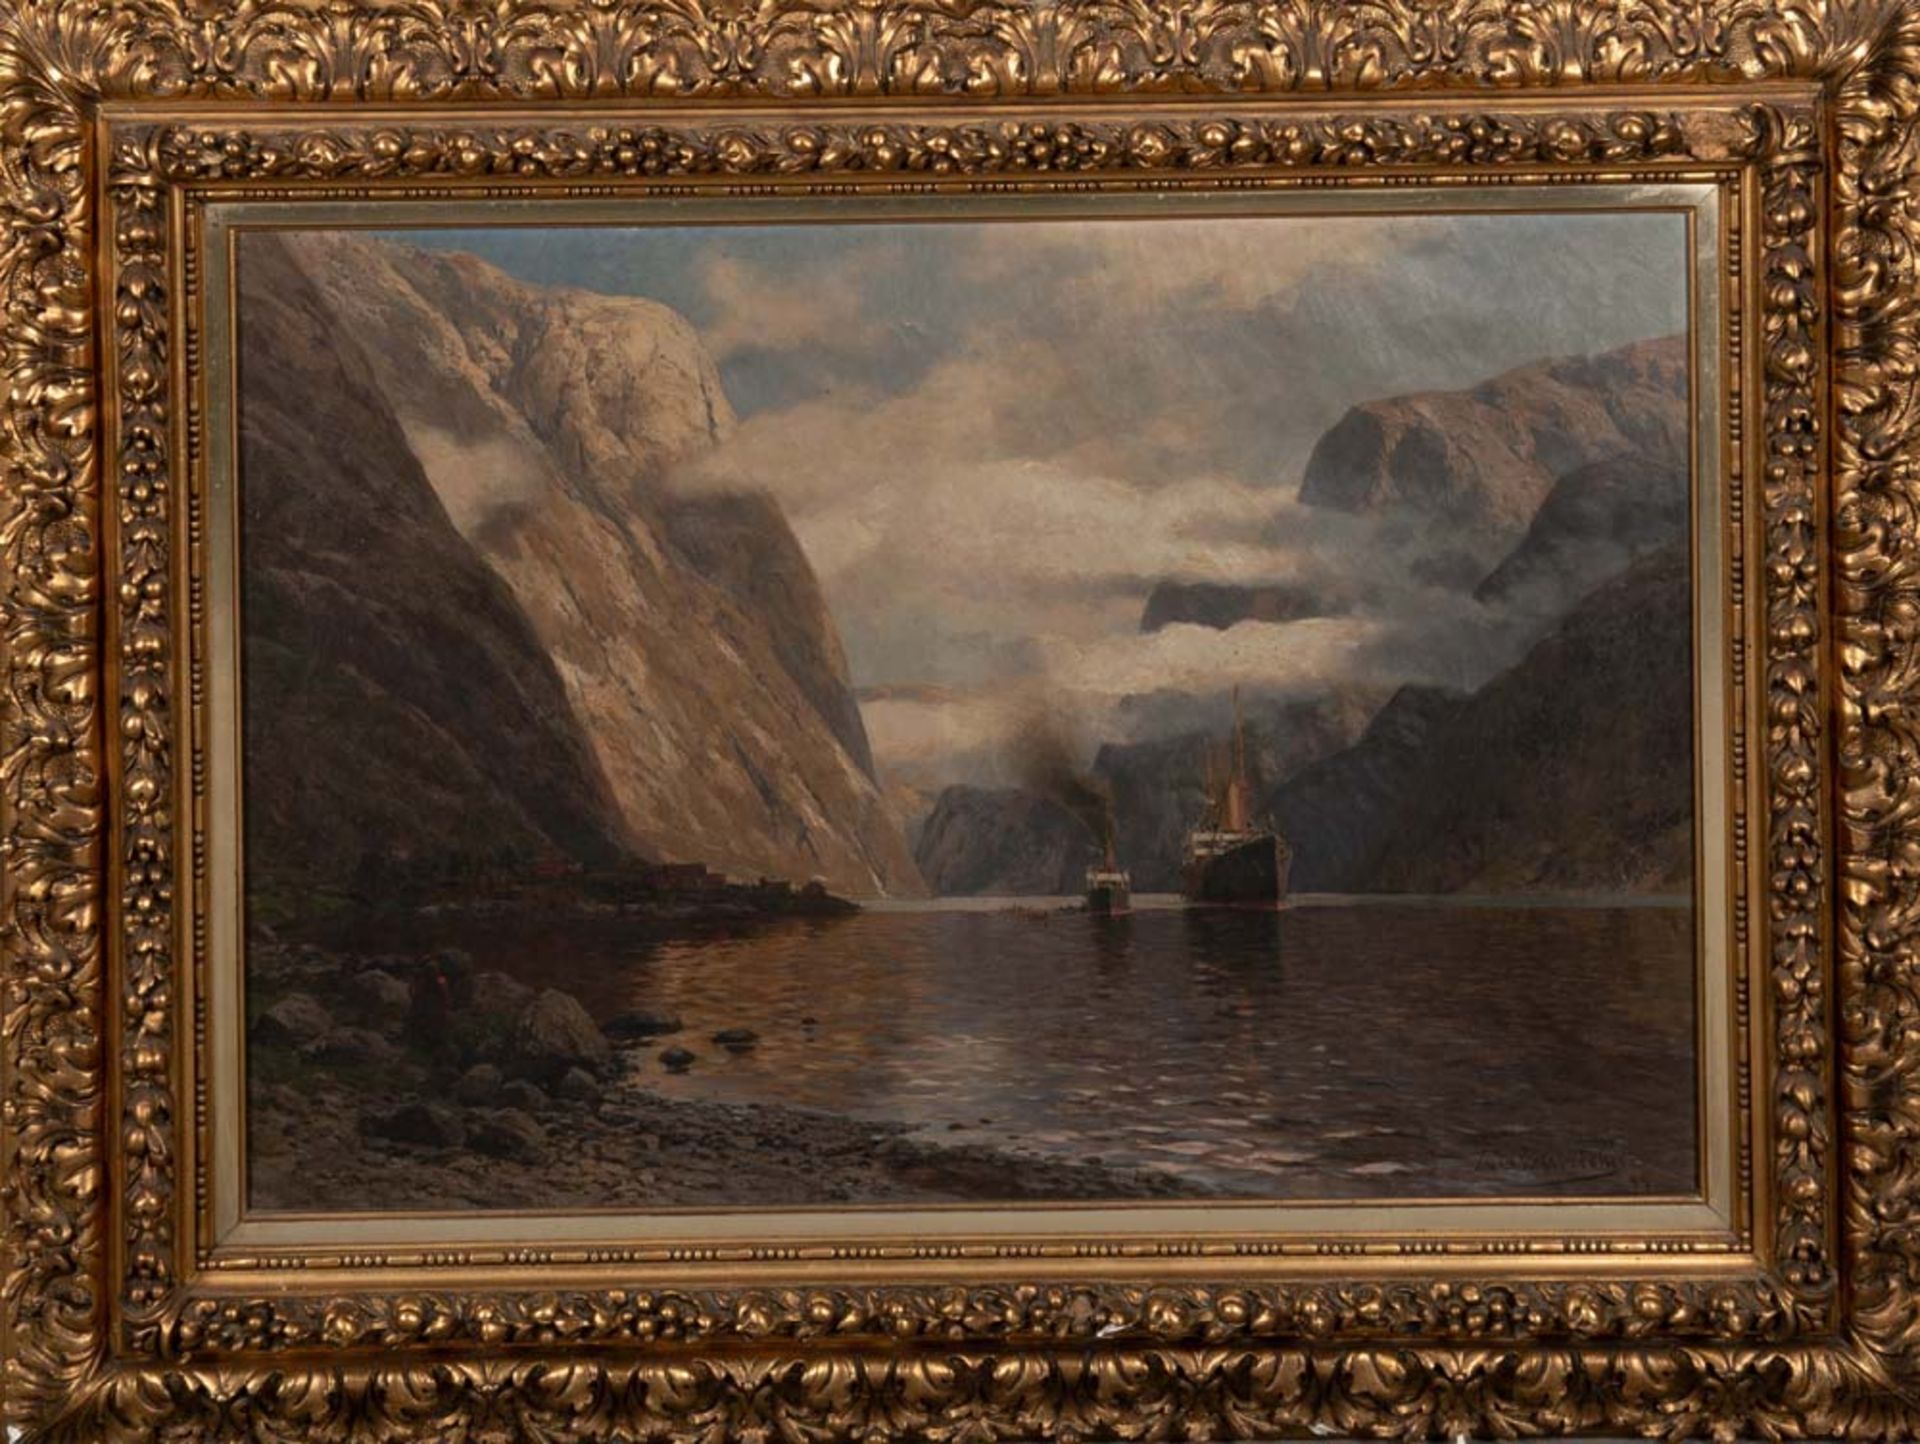 Themistokles von Eckenbrecher (1842-1921). Fjordlandschaft mit Schiffen und Personen. Öl/Lw., re./